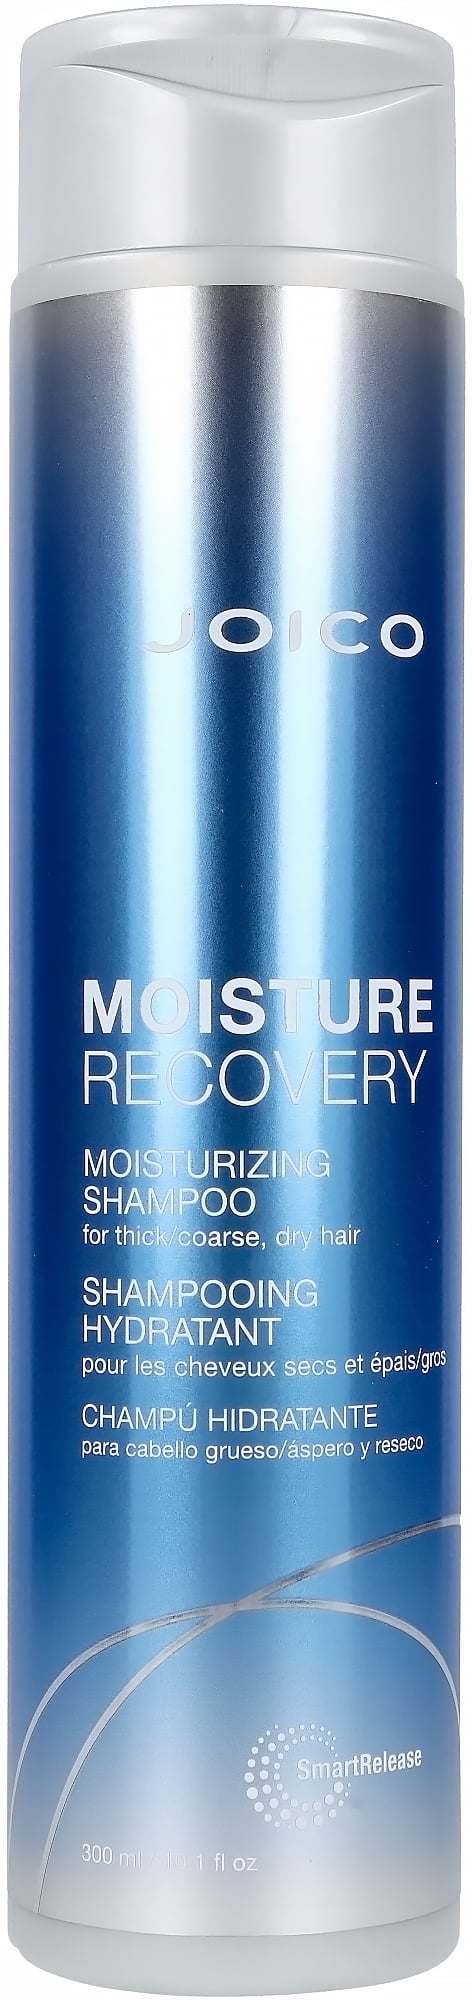 Joico - Moisture Recovery Shampoo 300 ml - Skjønnhet